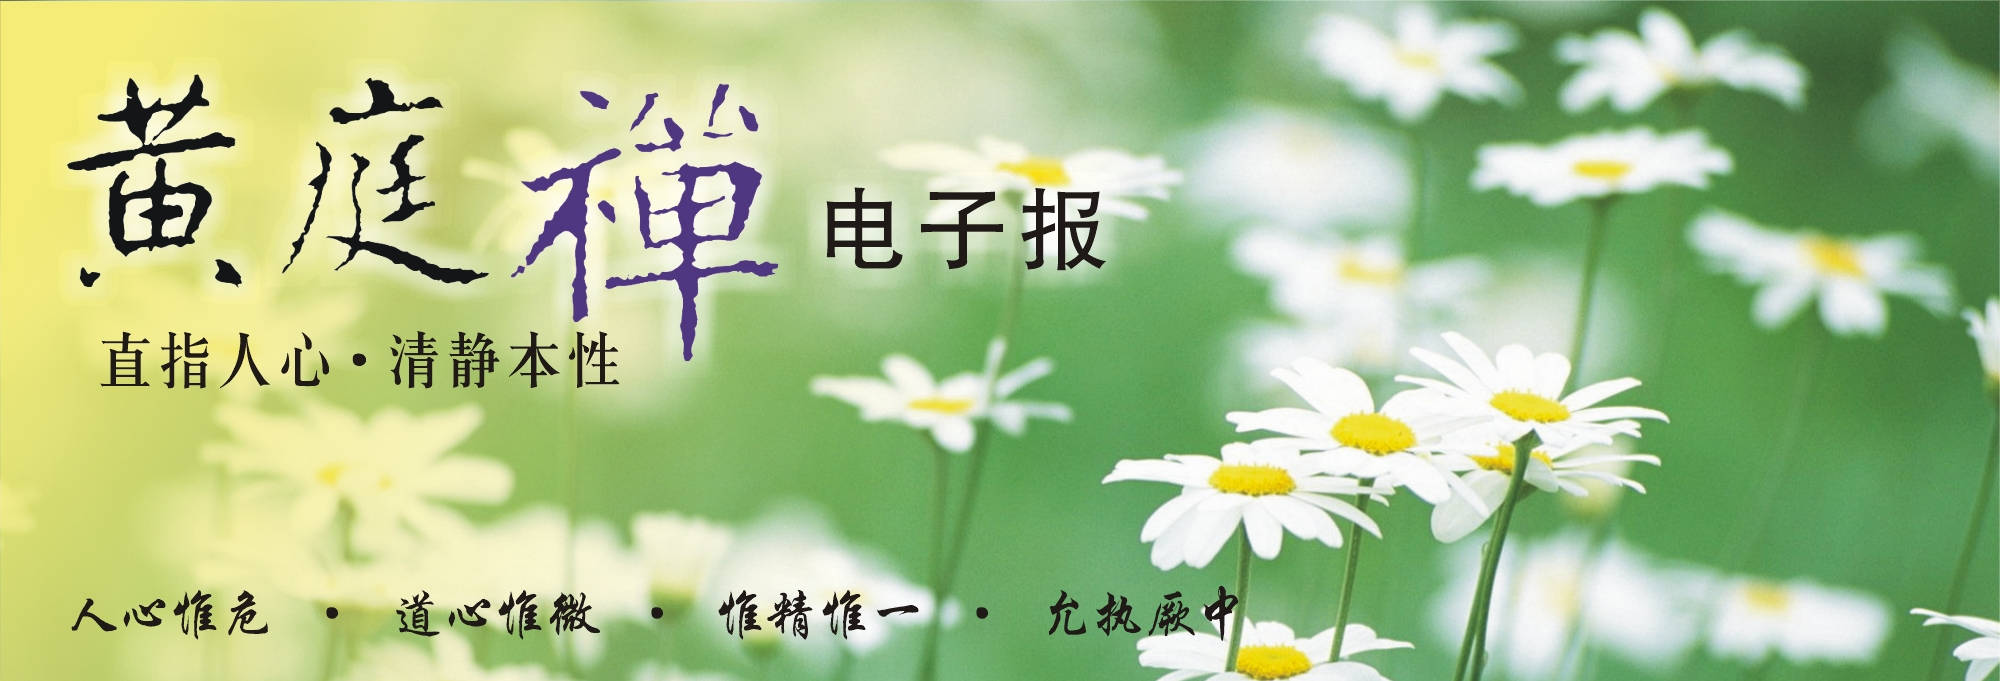 中华黄庭禅学会2014.05.11电子报